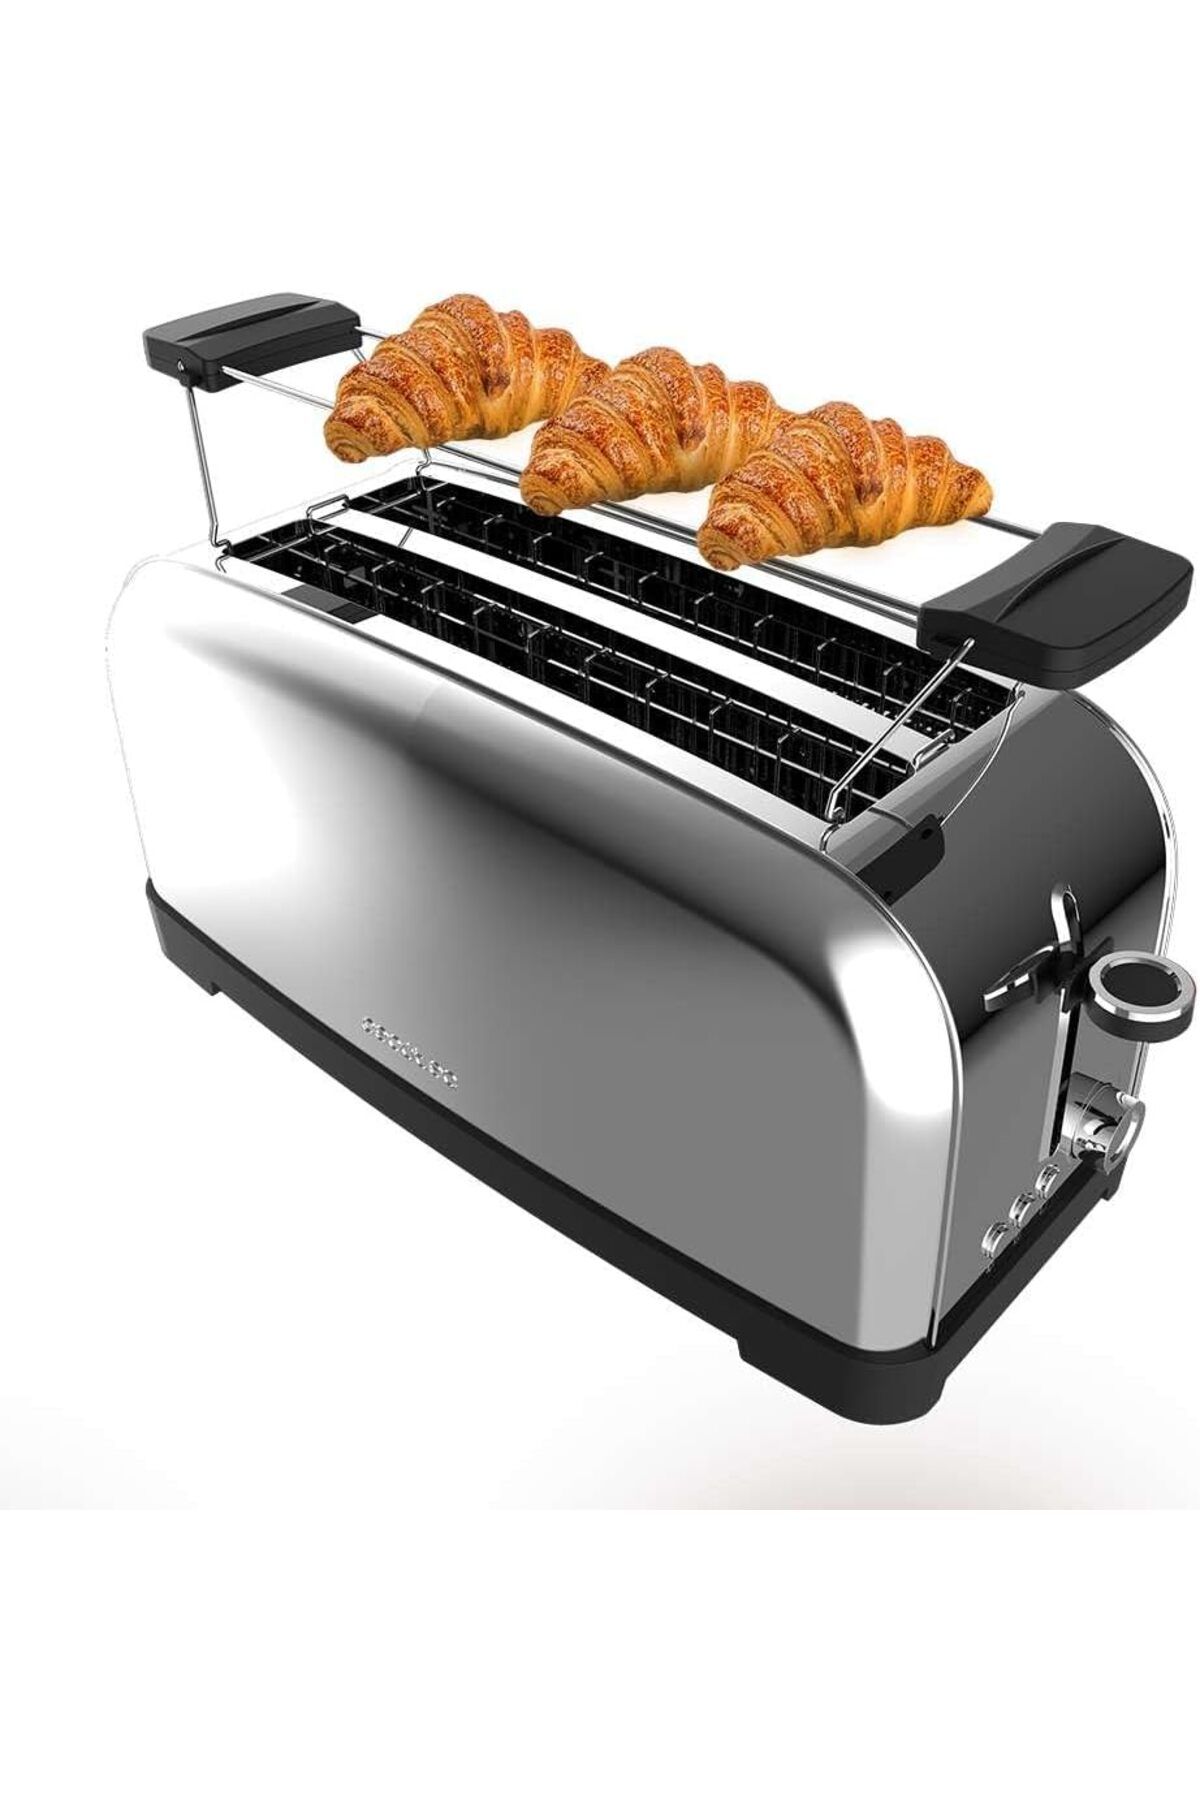 CECOTEC Dikey Ekmek Kızartma Makinesi Toastin' Time 1500 Yeşil, 1500 W, Çift Uzun ve Geniş Yarık